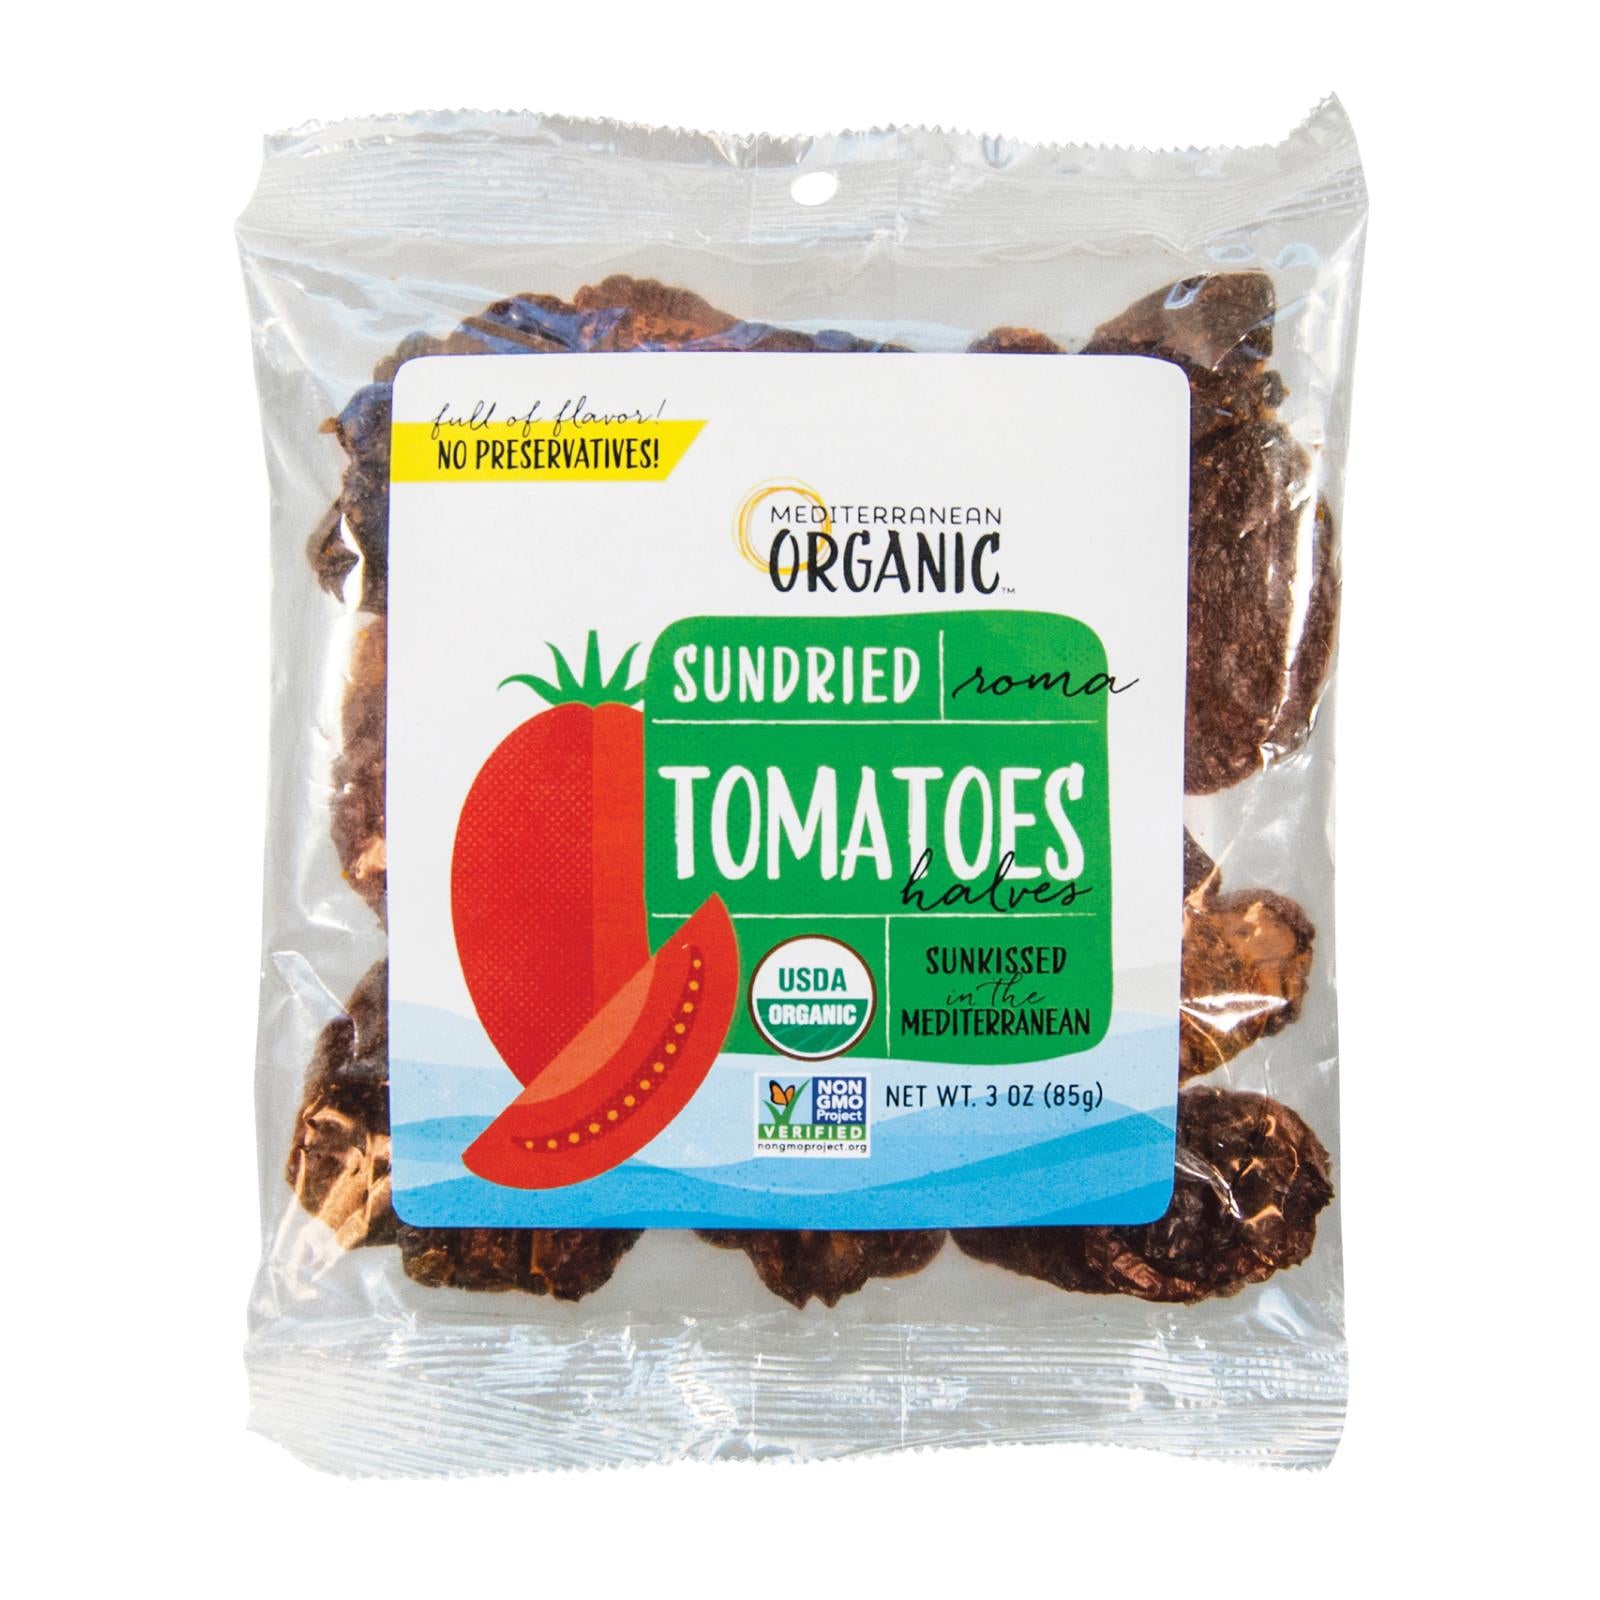 Méditerranée biologique, Mediterranean Organic Tomates séchées au soleil - Caisse de 12 - 3 OZ (paquet de 12)